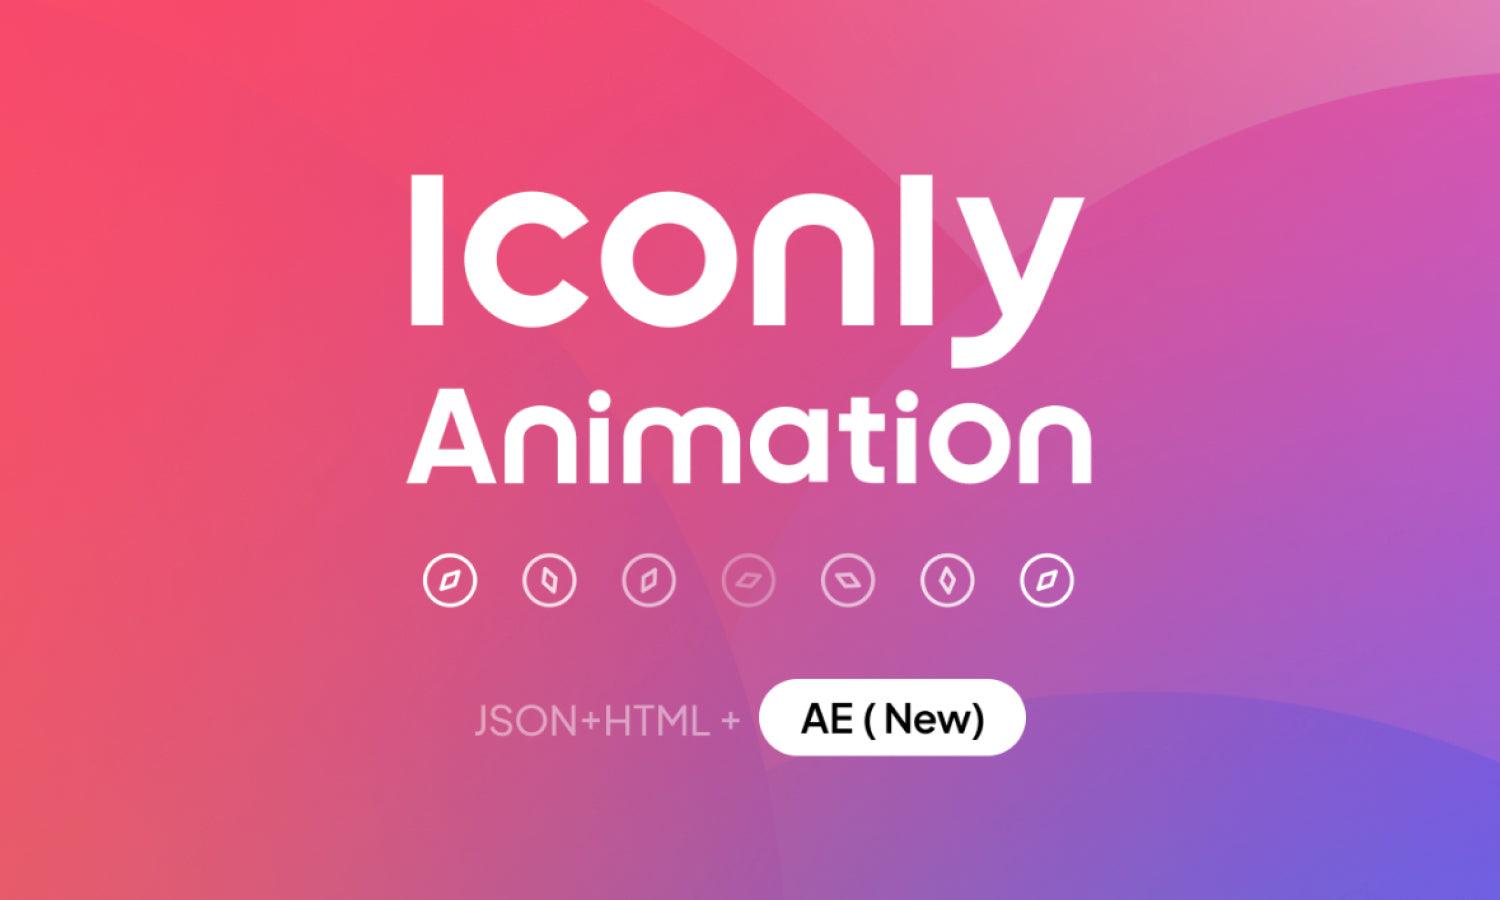 Iconly Animation Animated Icons - Free Icons - Kreafolk